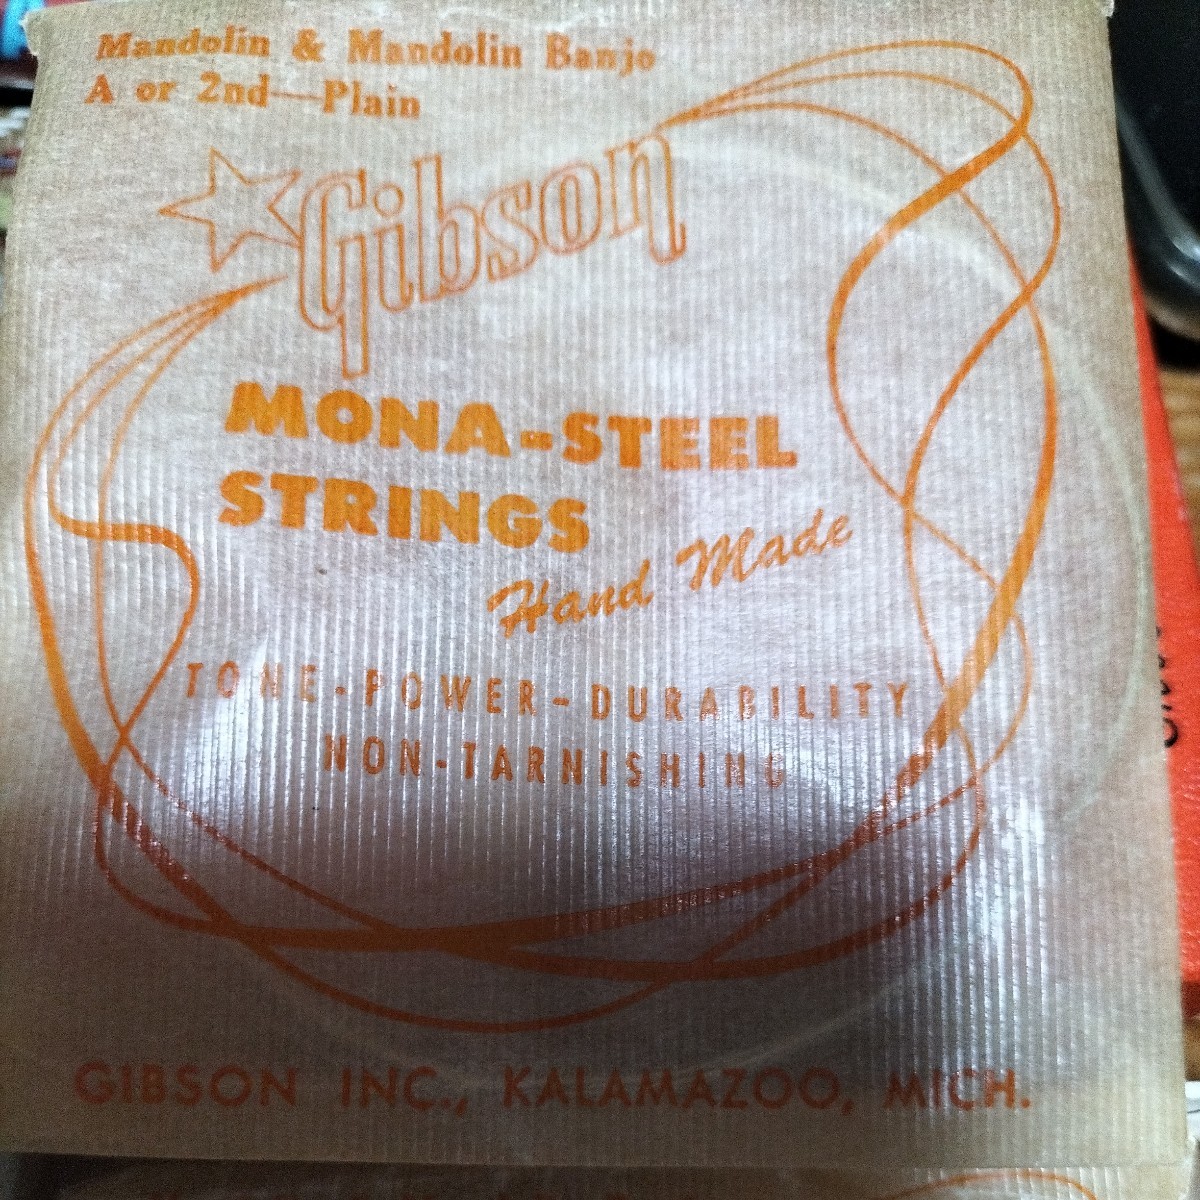 1950年代　Gibson　Mona-steel strings 　マンドリン、バンジョー弦　カラマズー、ミシガン工場時代_画像6